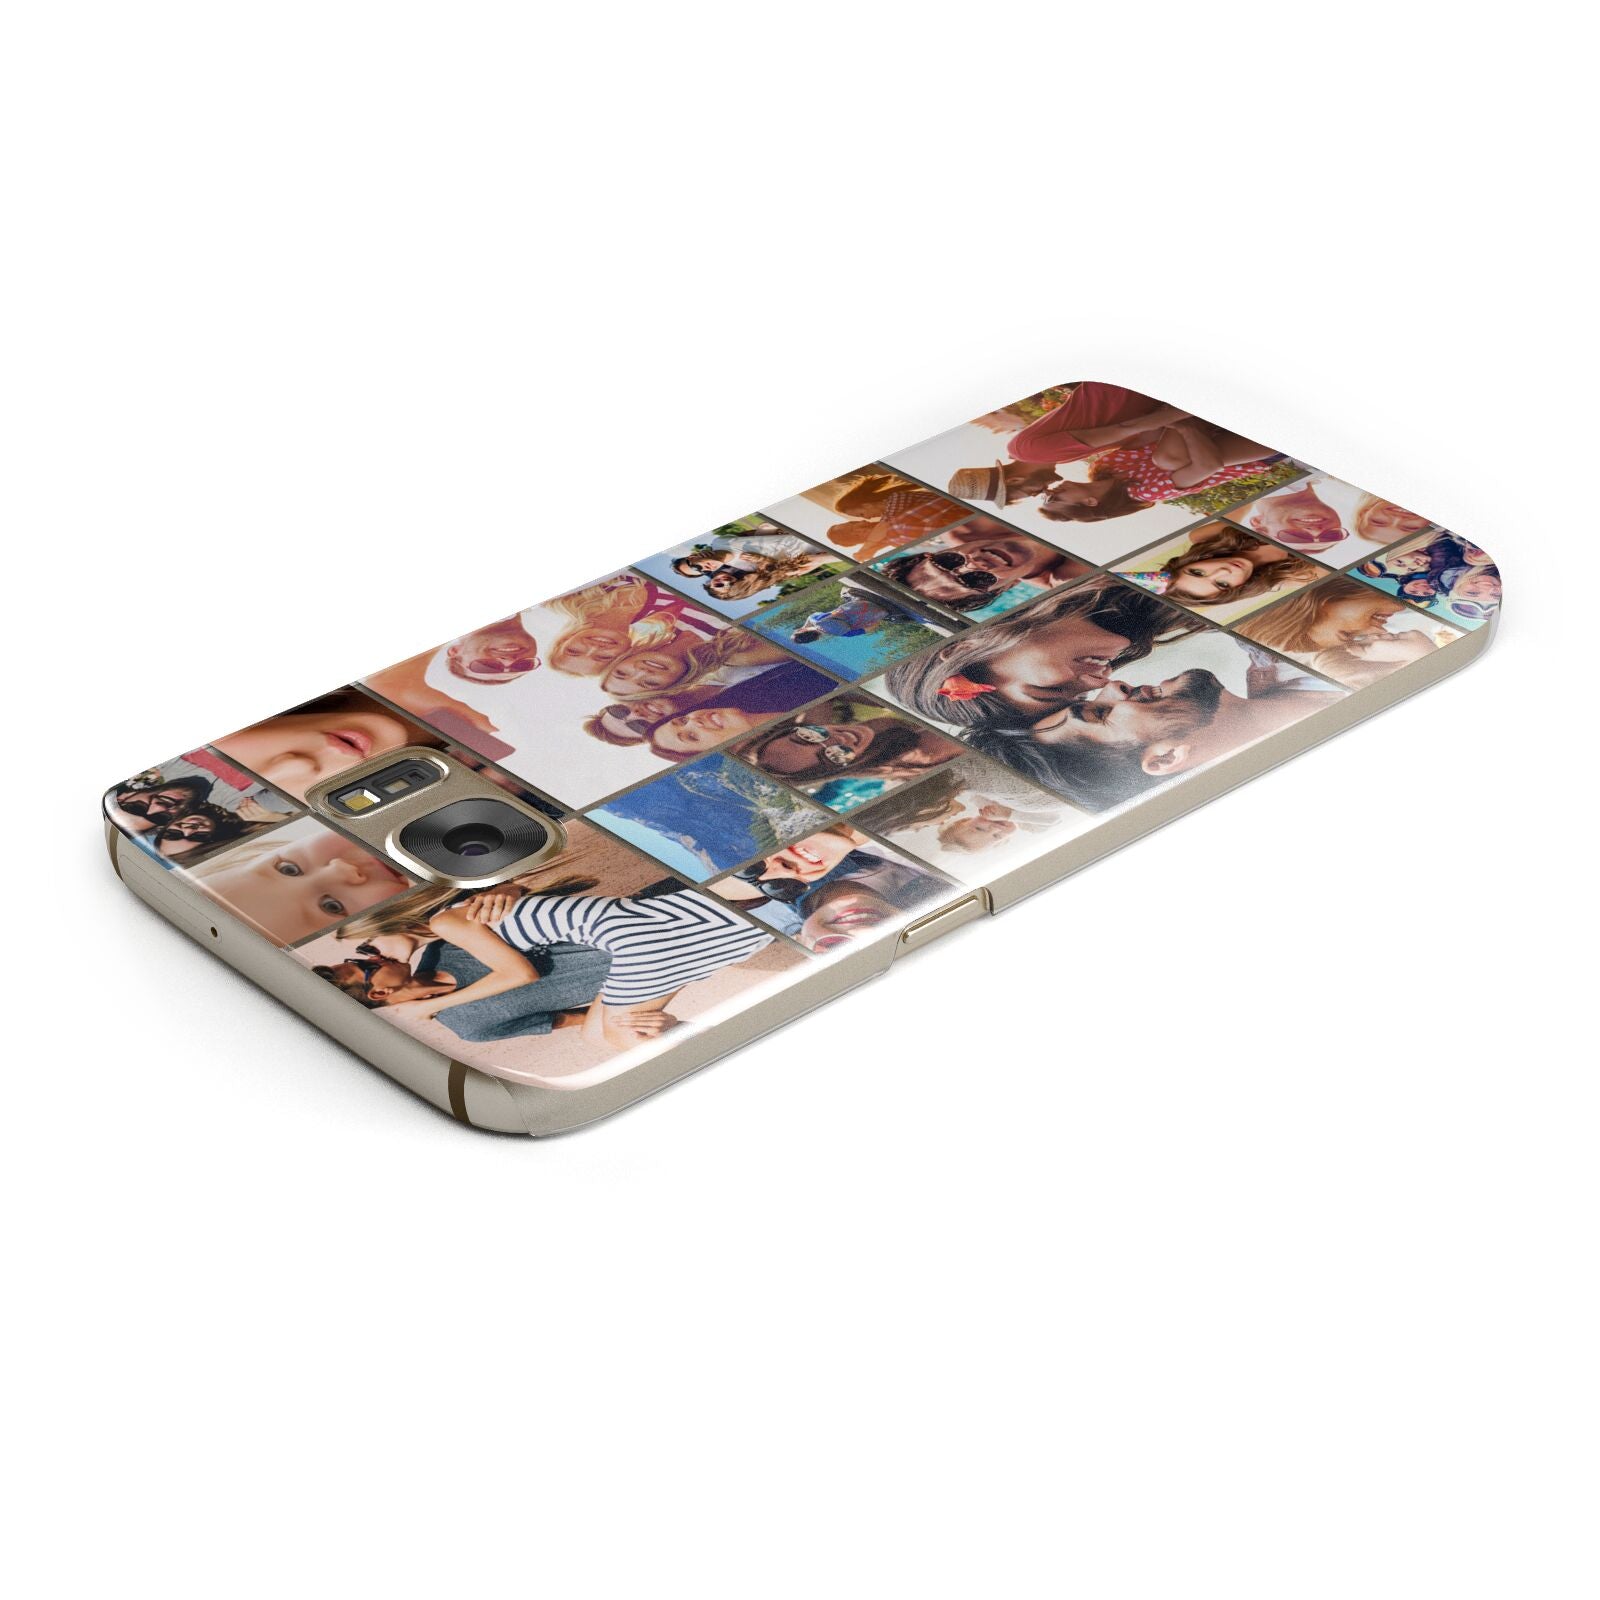 Photo Grid Samsung Galaxy Case Top Cutout